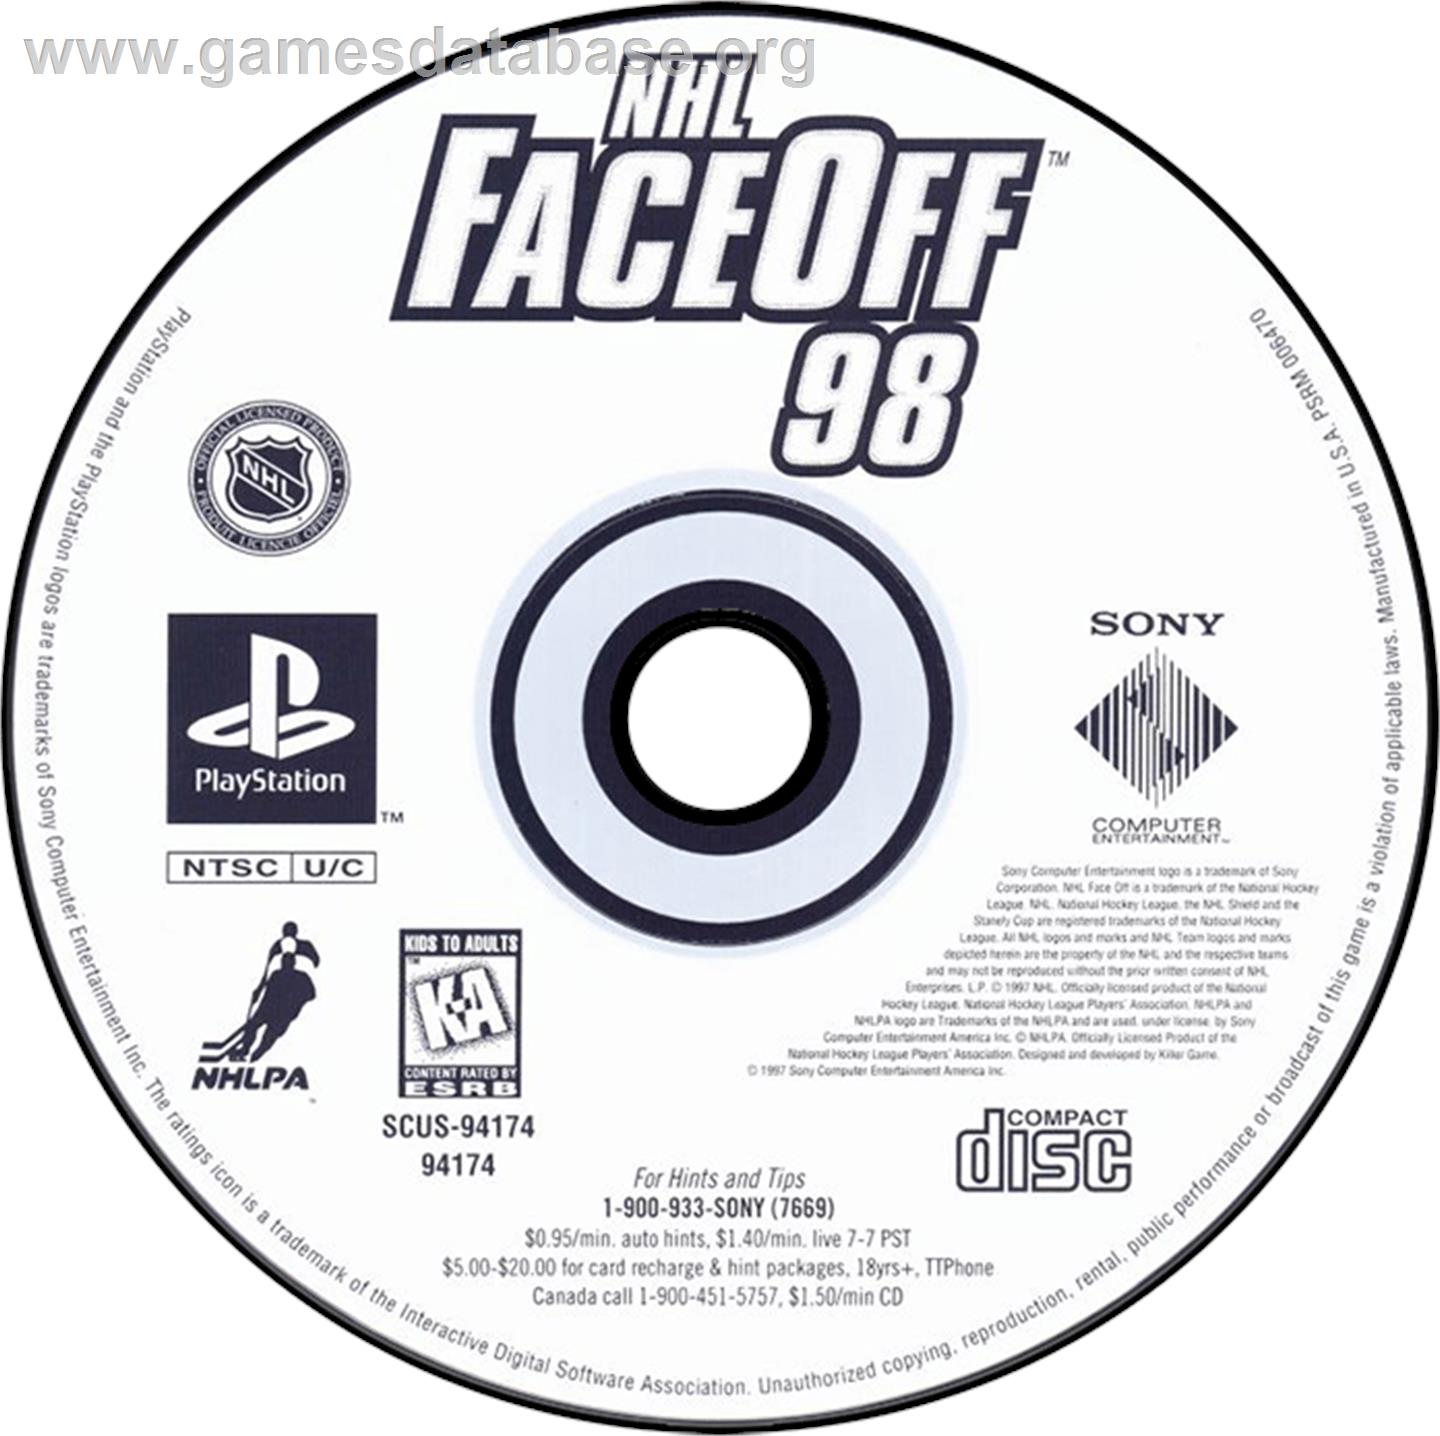 NHL FaceOff '98 - Sony Playstation - Artwork - Disc